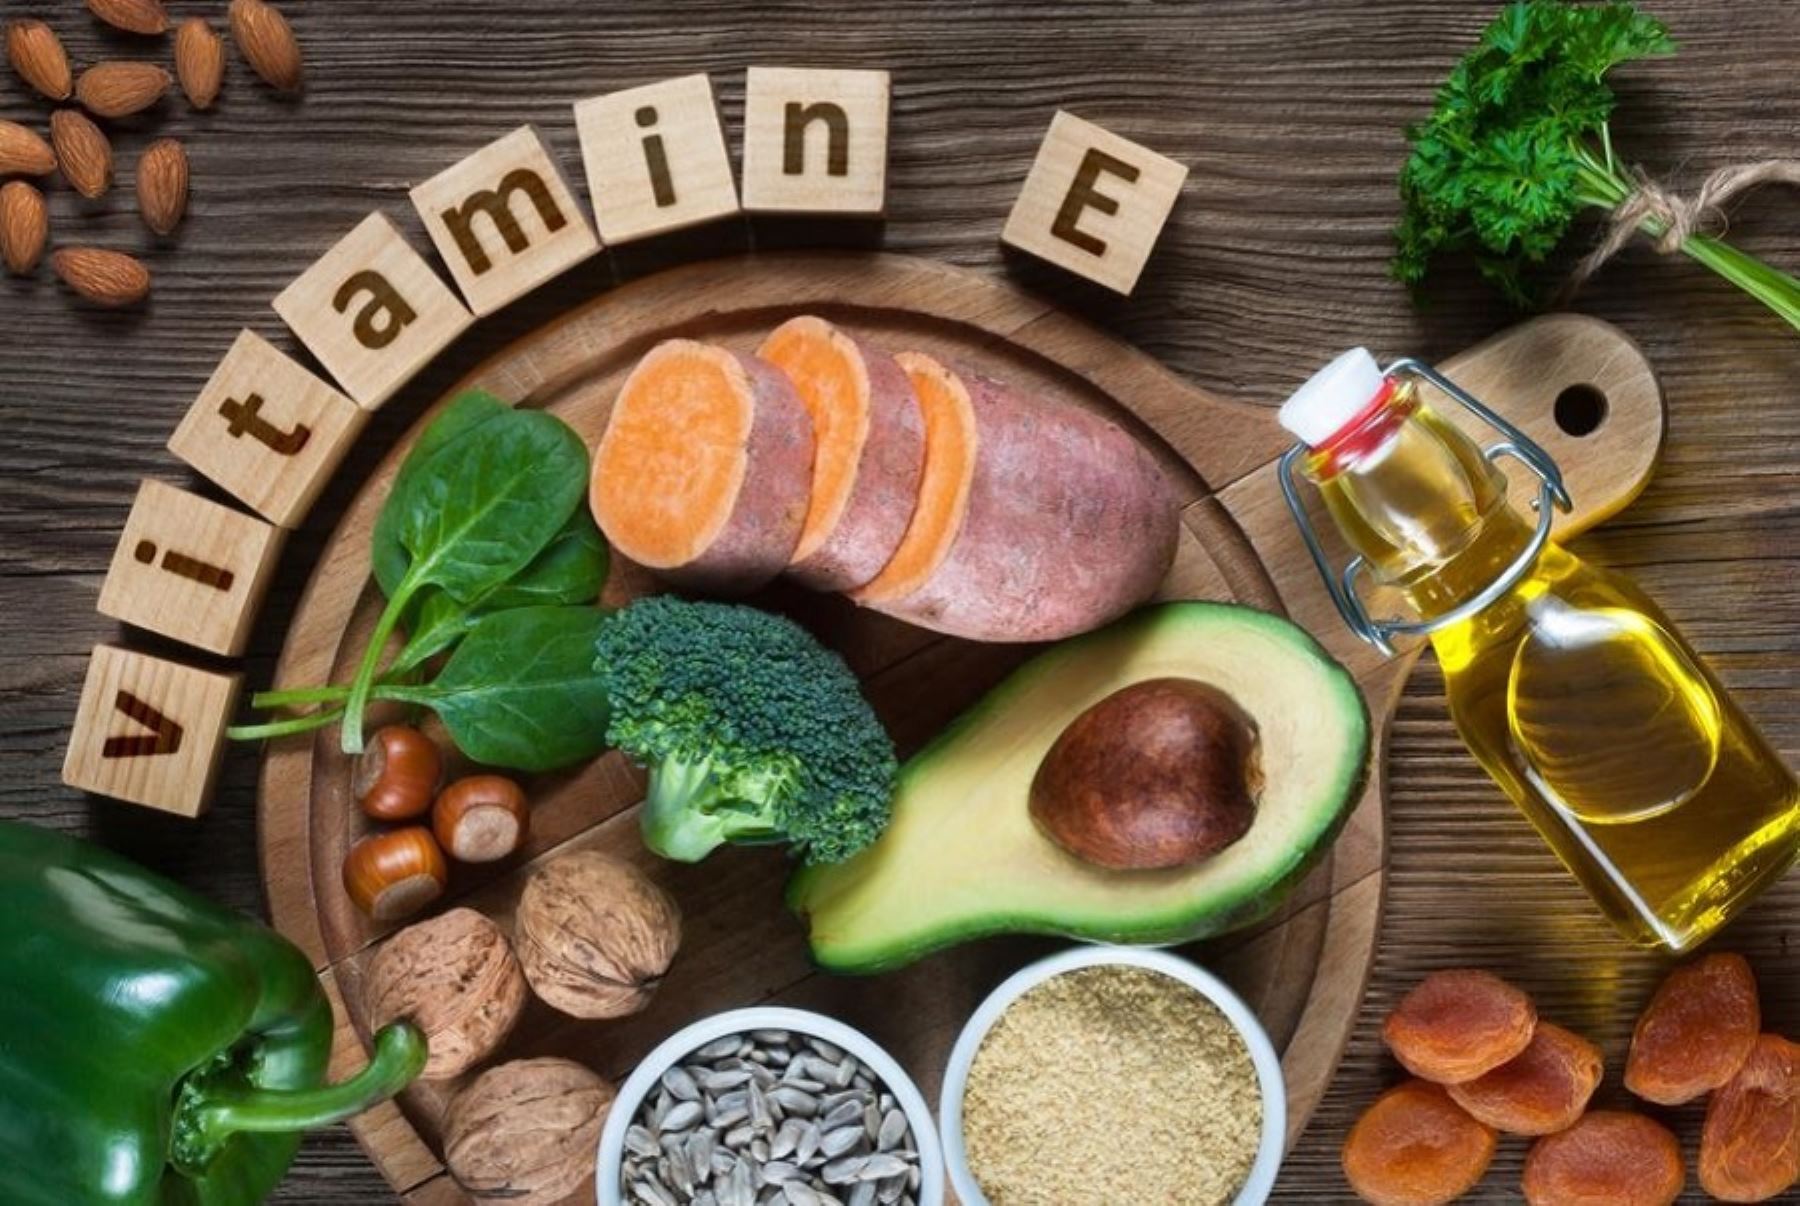 Alimentos ricos en vitamina E y otros nutrientes esenciales para el buen funcionamiento del organismo, ralentizar el envejecimiento celular y reforzar el sistema inmune frente a infecciones y enfermedades.